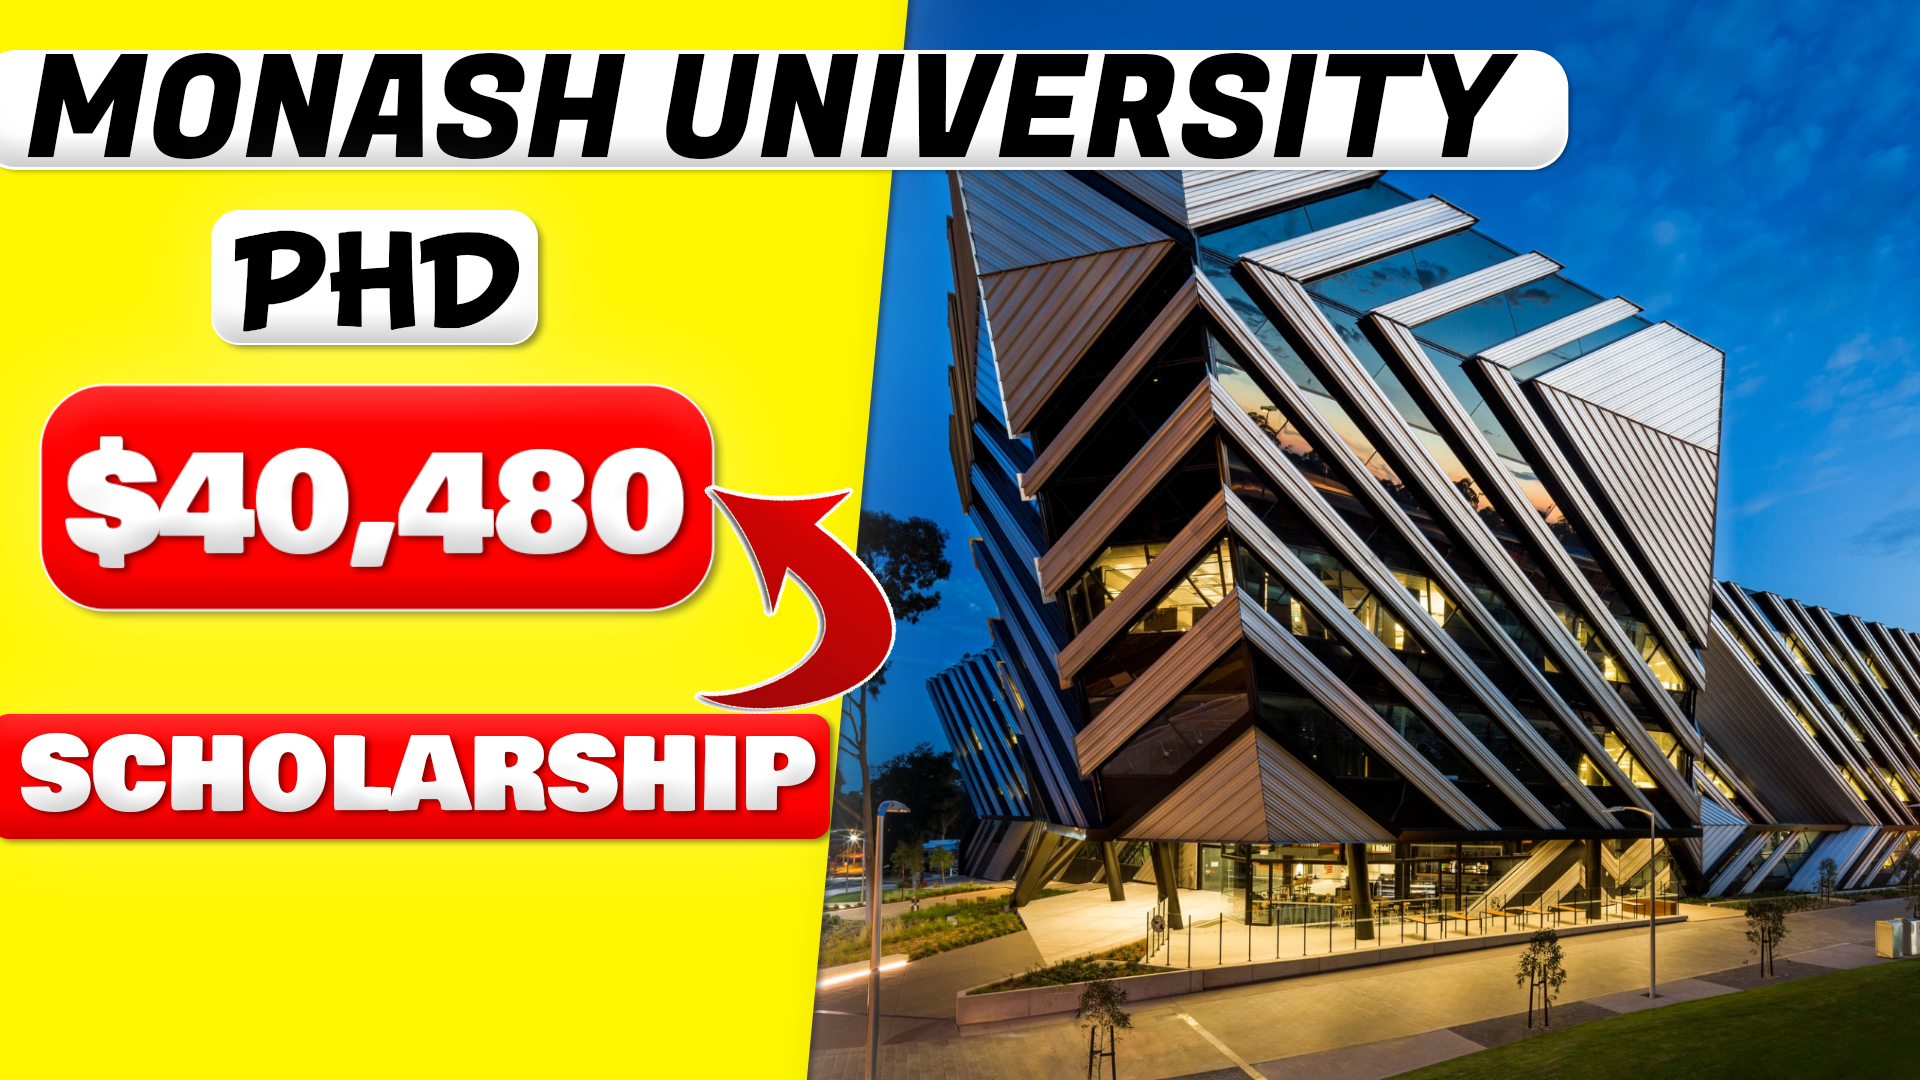 phd scholarship at monash university